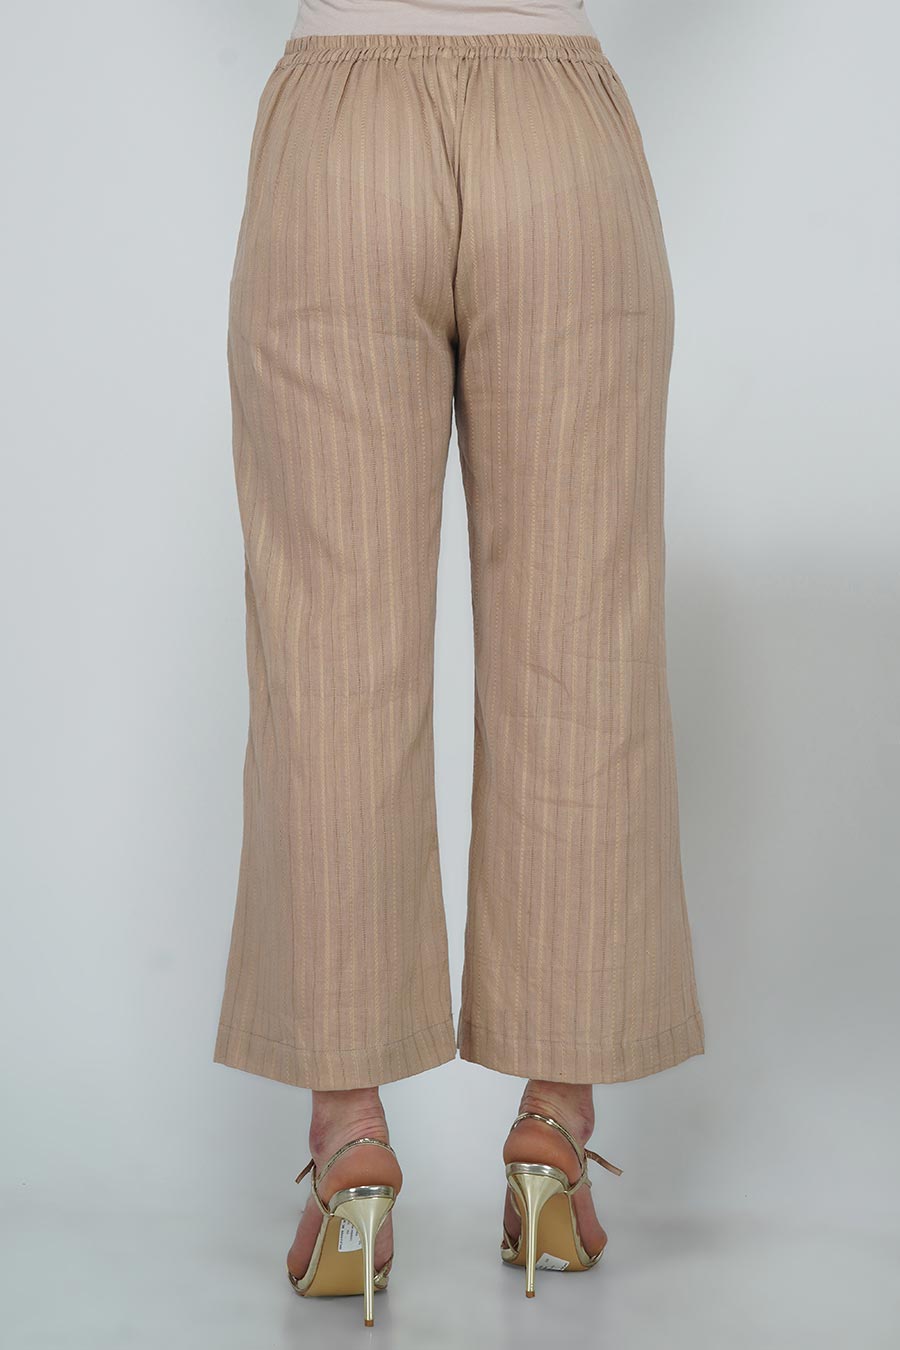 Champagne Leno Cotton Striped Pants